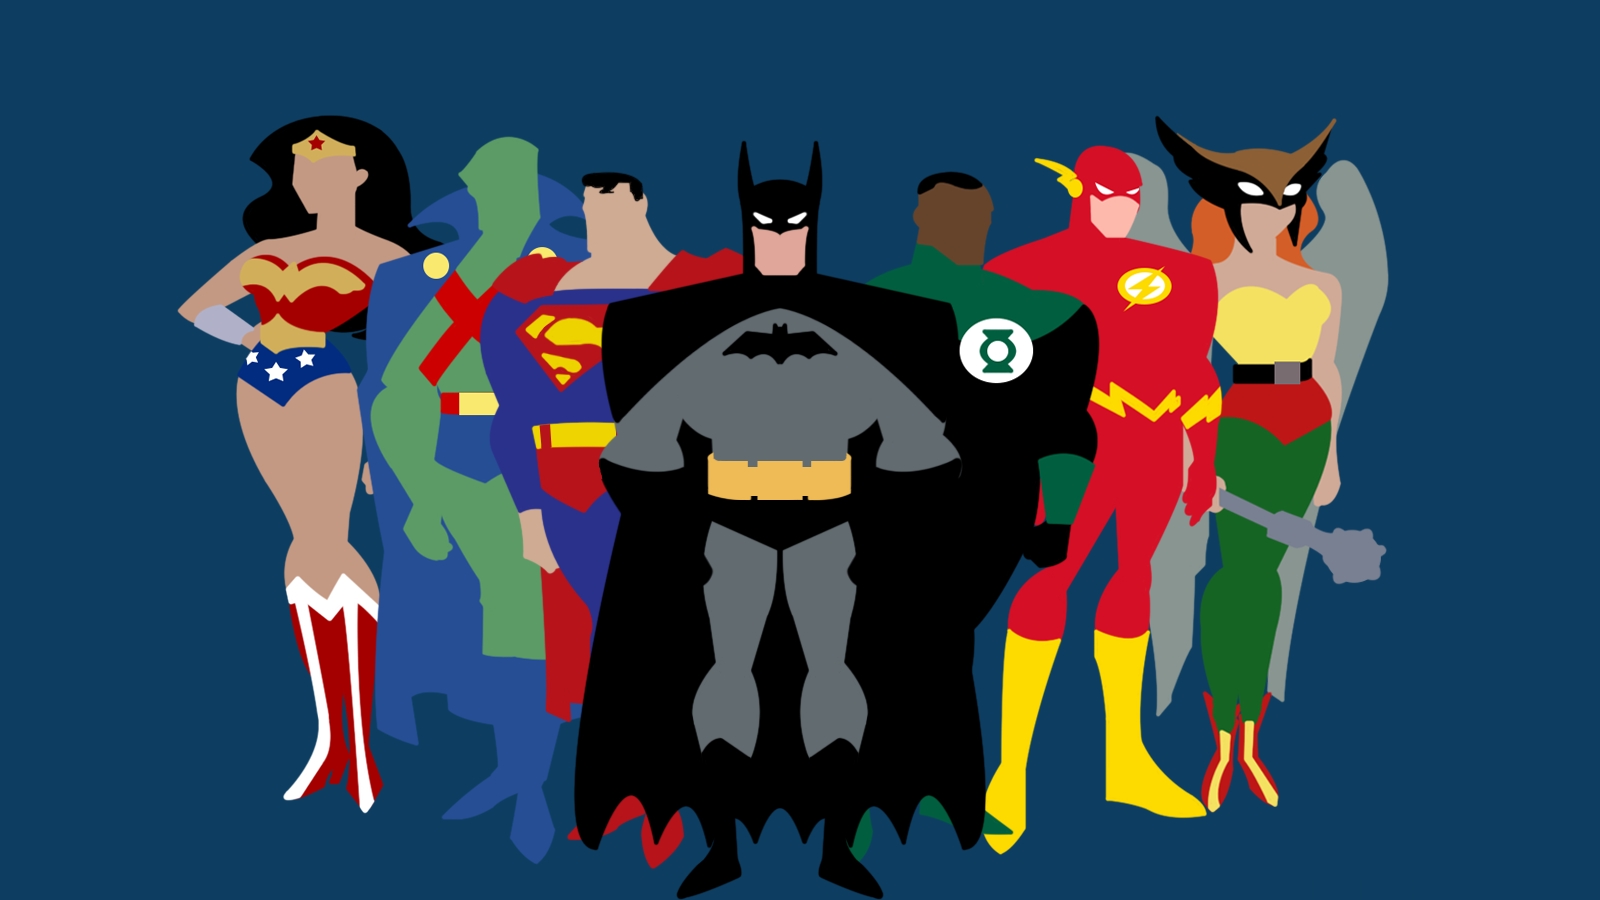 351168 скачать обои телешоу, лига справедливости, бэтмен, комиксы dc, диана принс, флеш, зелёный фонарь, ястребиная девушка (dc comics), джон стюарт (зеленый фонарь), марсианский охотник, шайера хол, супермен, уолли уэст, чудо женщина - заставки и картинки бесплатно